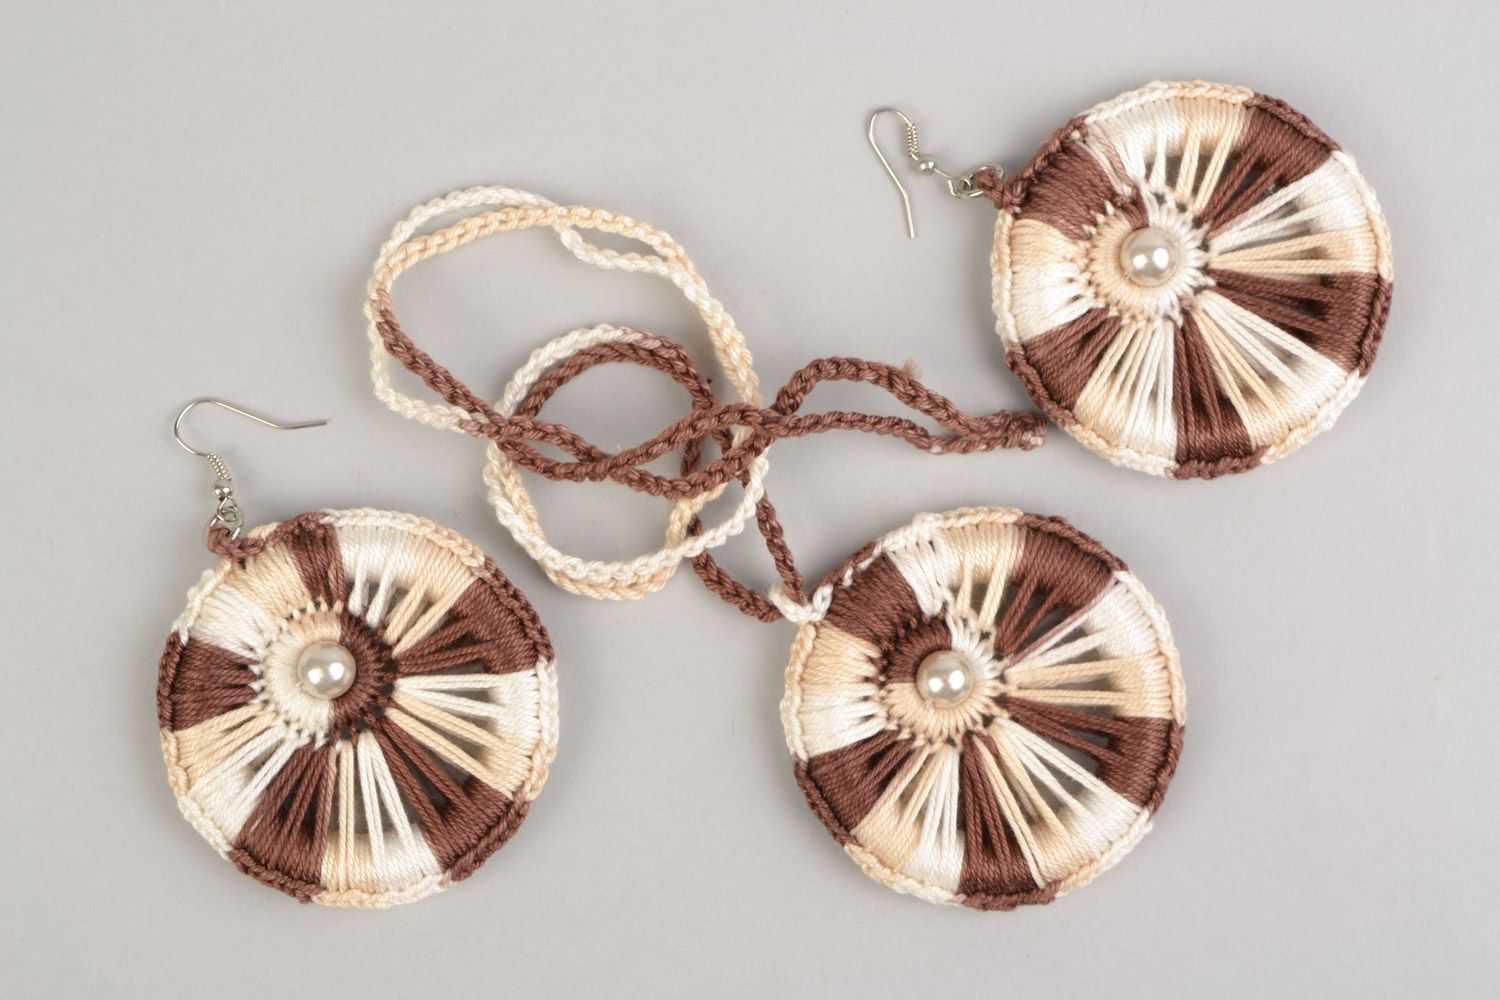 Текстильные украшения плетеные 2 шт набор серьги и кулон бежевые ручная работа фото 2